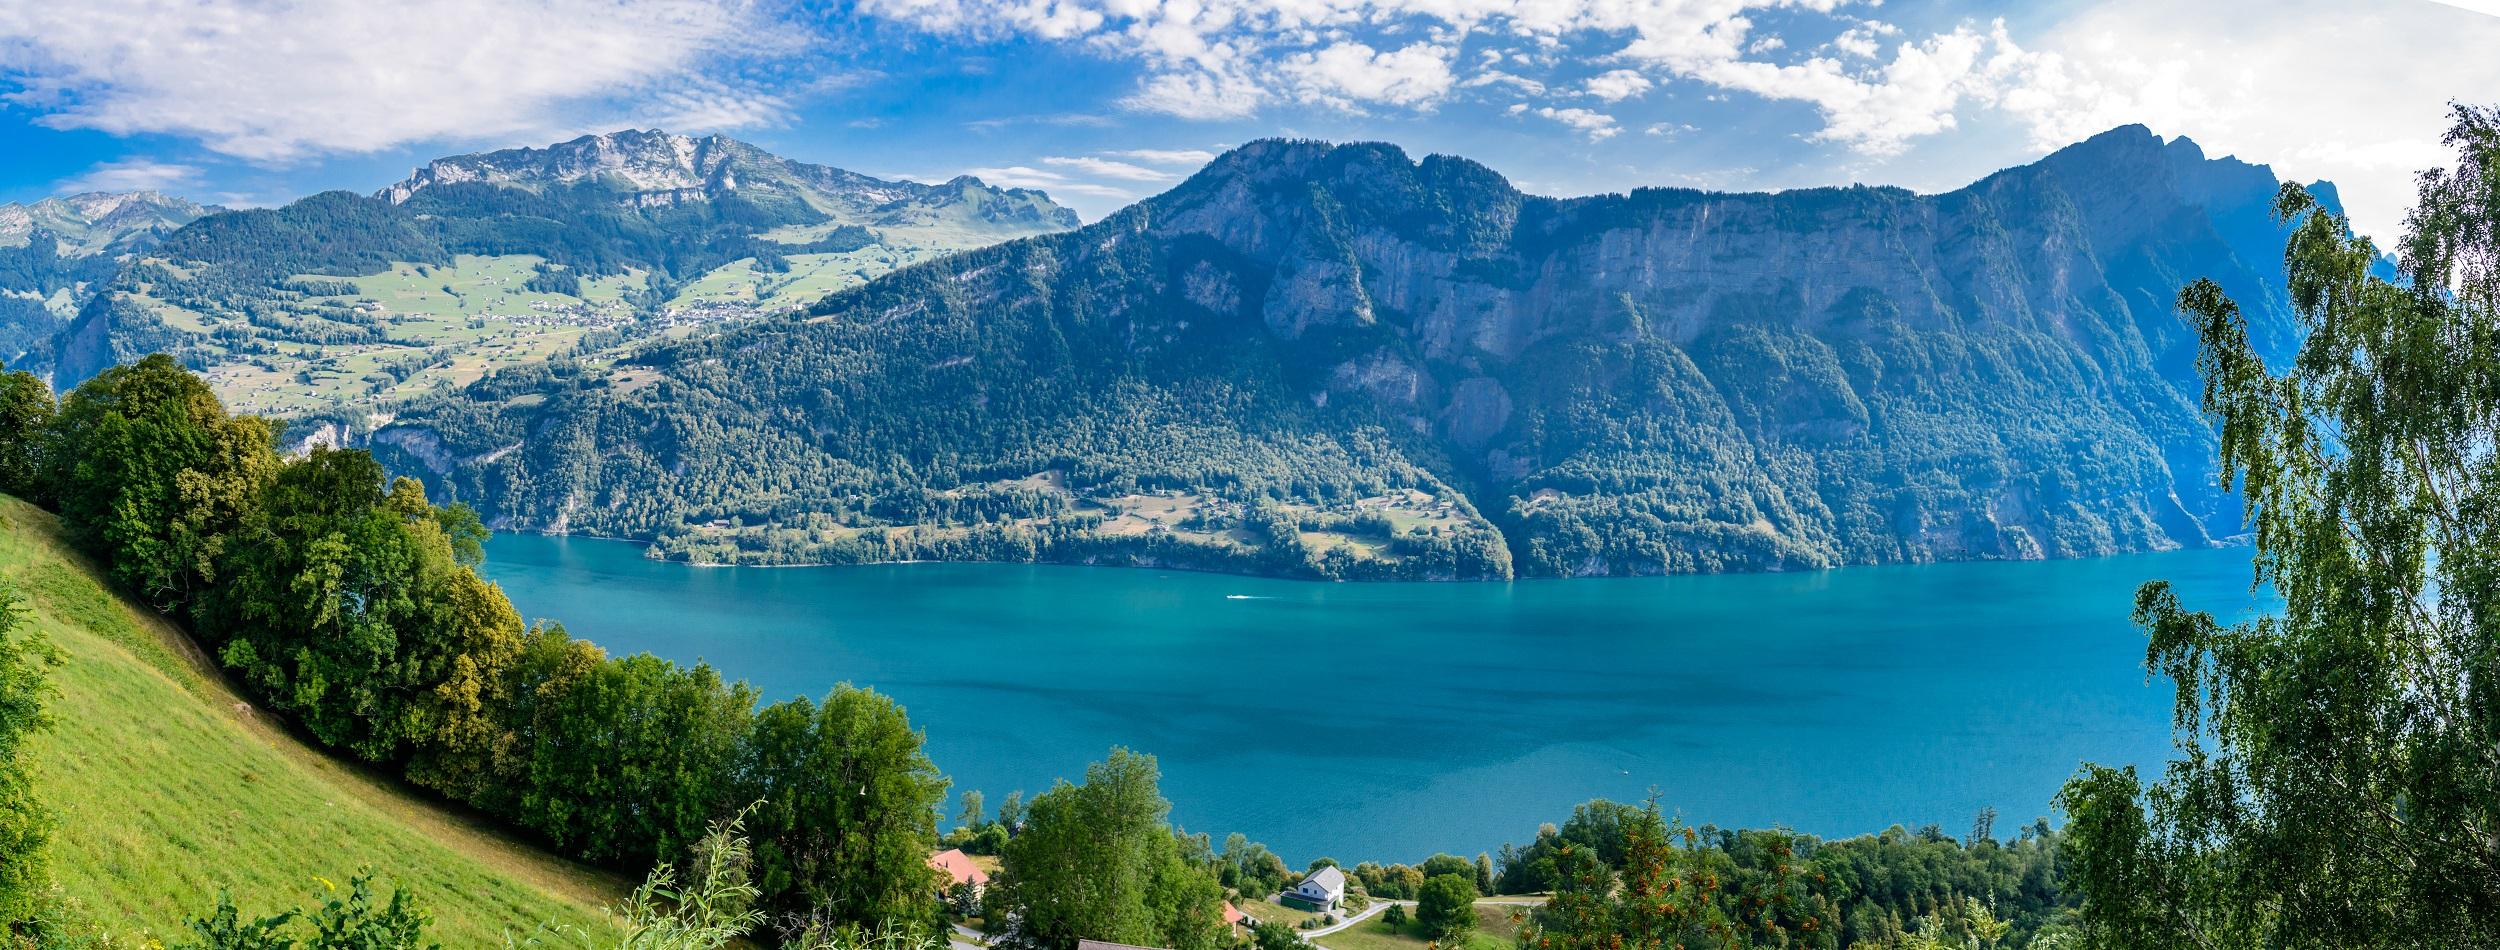 Schweiz-Walensee